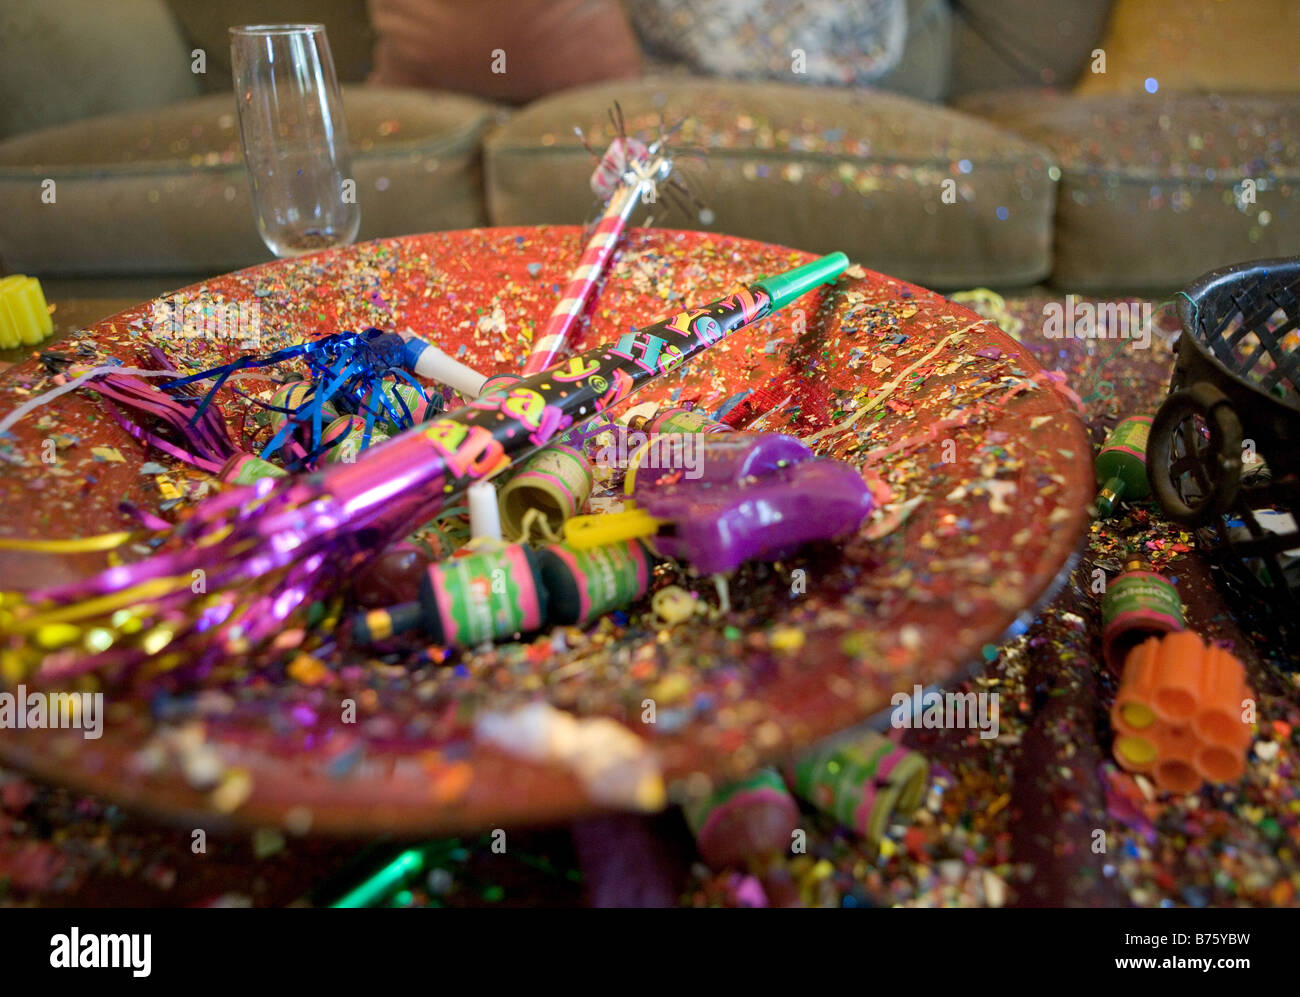 Fiesta de Año nuevo naufragio incluyendo una copa de champaña poppers confetti serpentinas de cuernos y otros creadores de ruidos Foto de stock